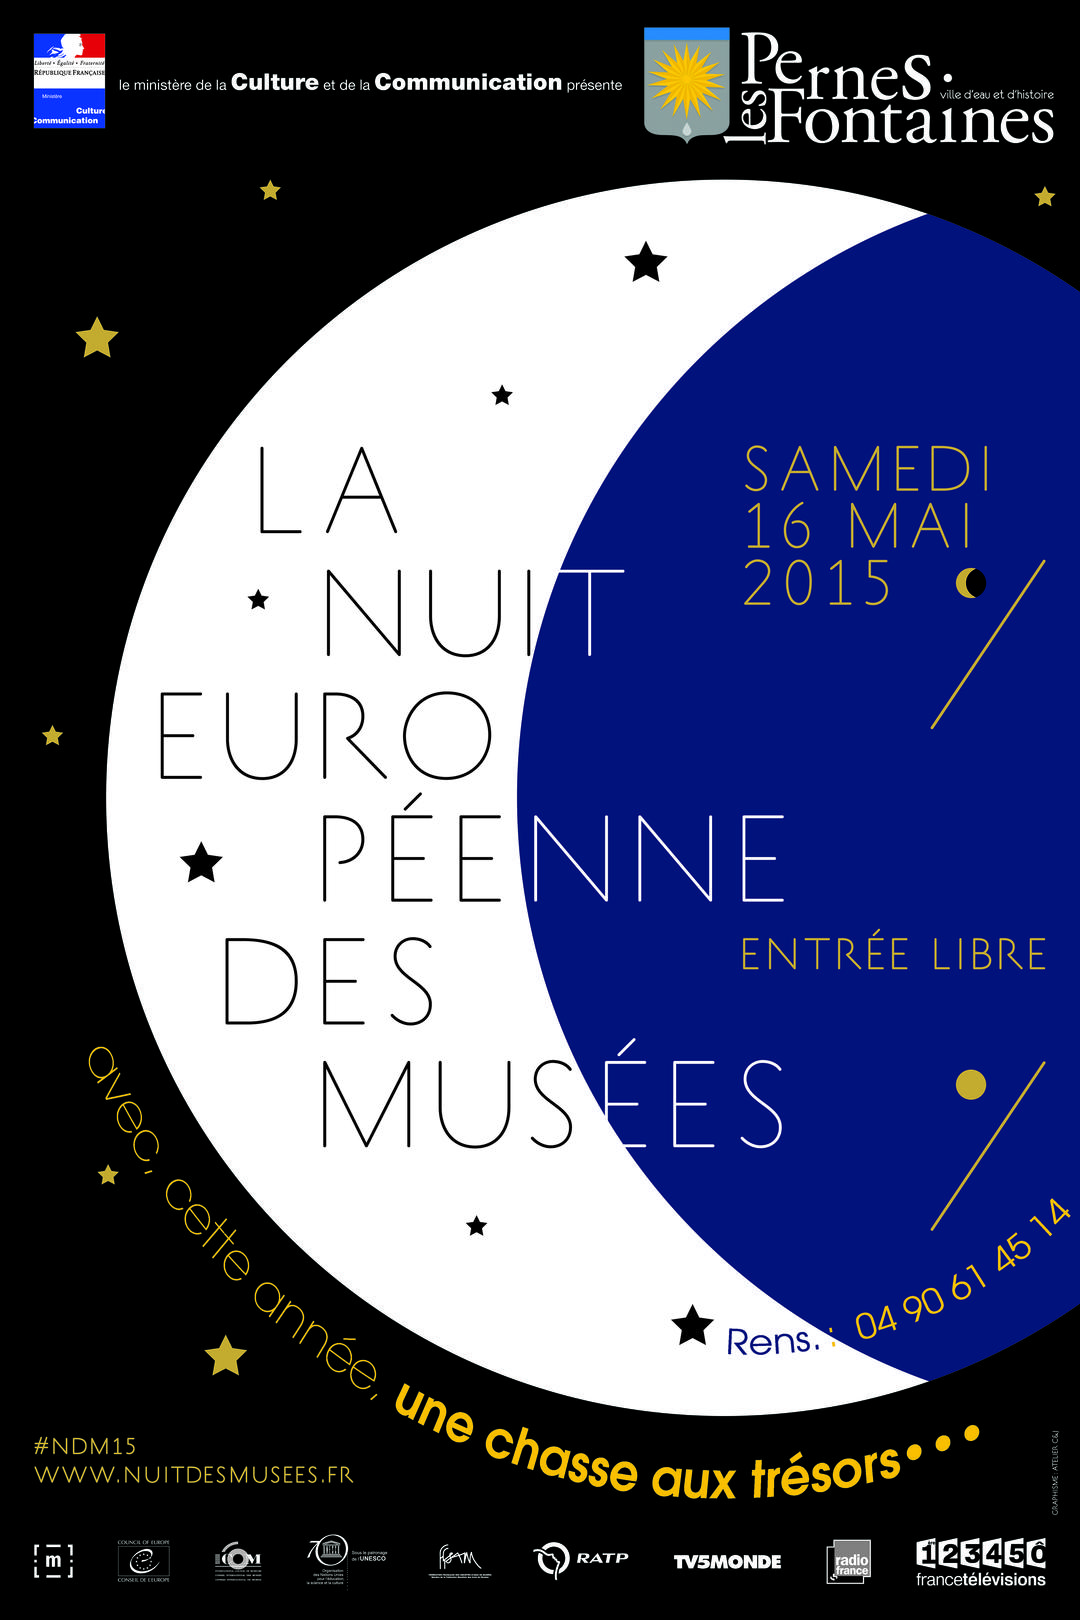 La Nuit Européenne des Musées